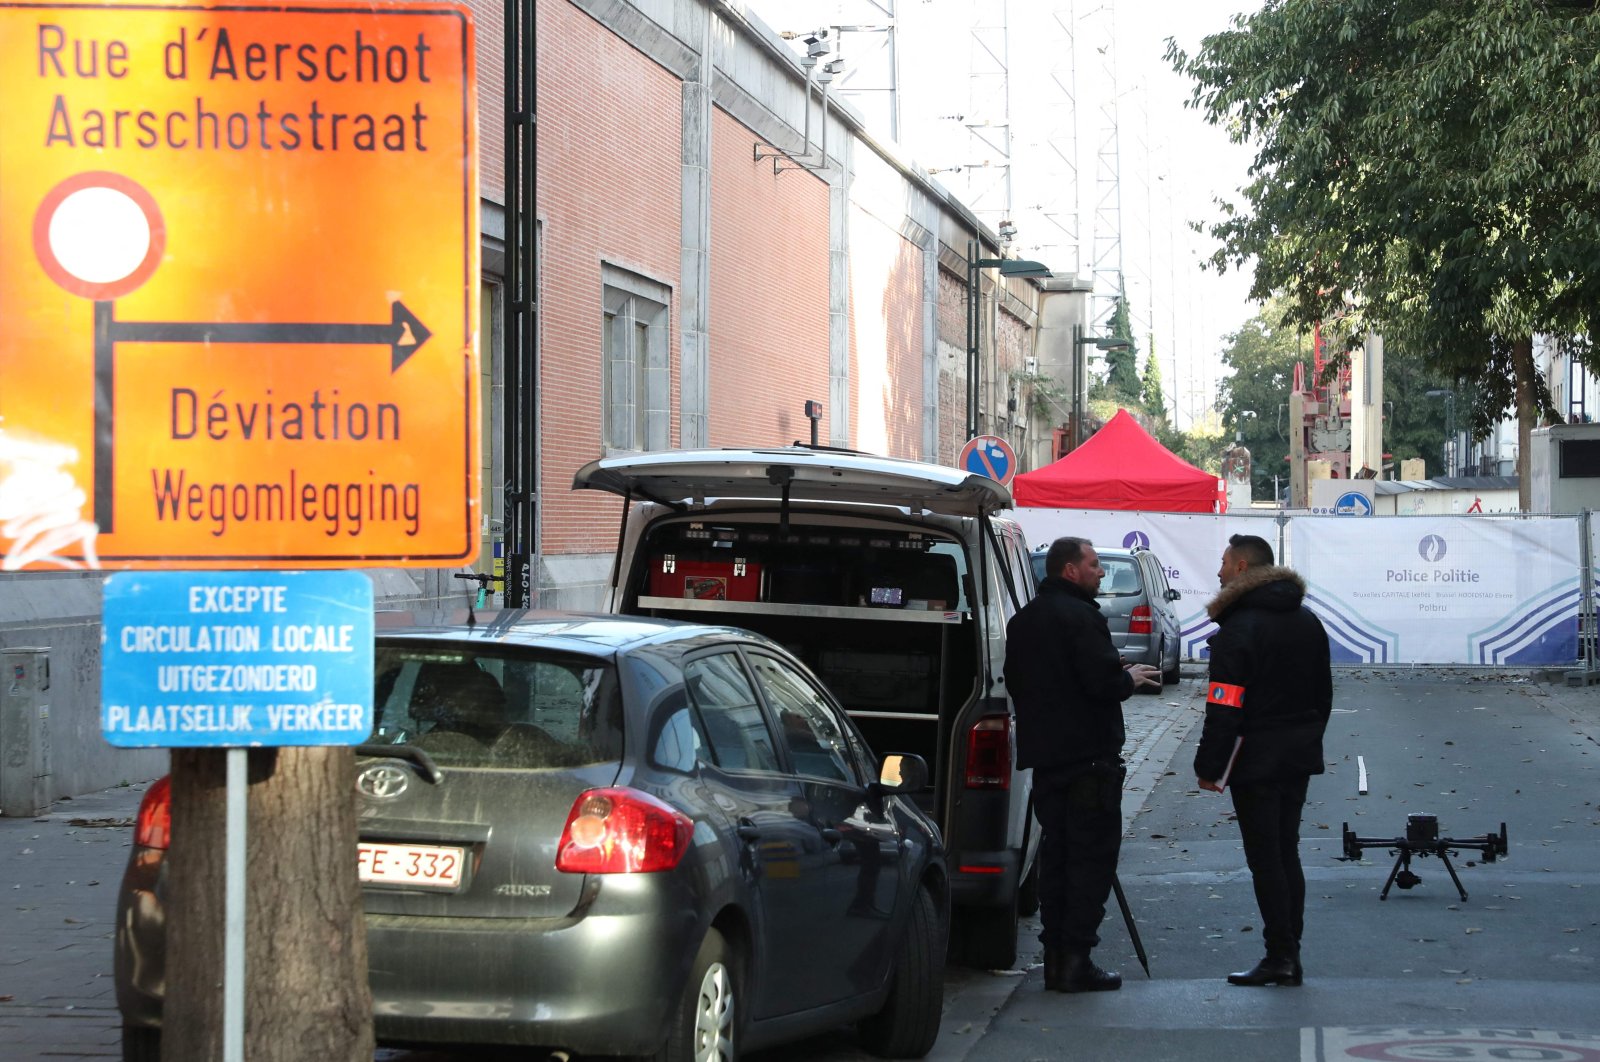 Mantan tersangka penusukan di Belgia terdaftar sebagai kemungkinan ekstremis